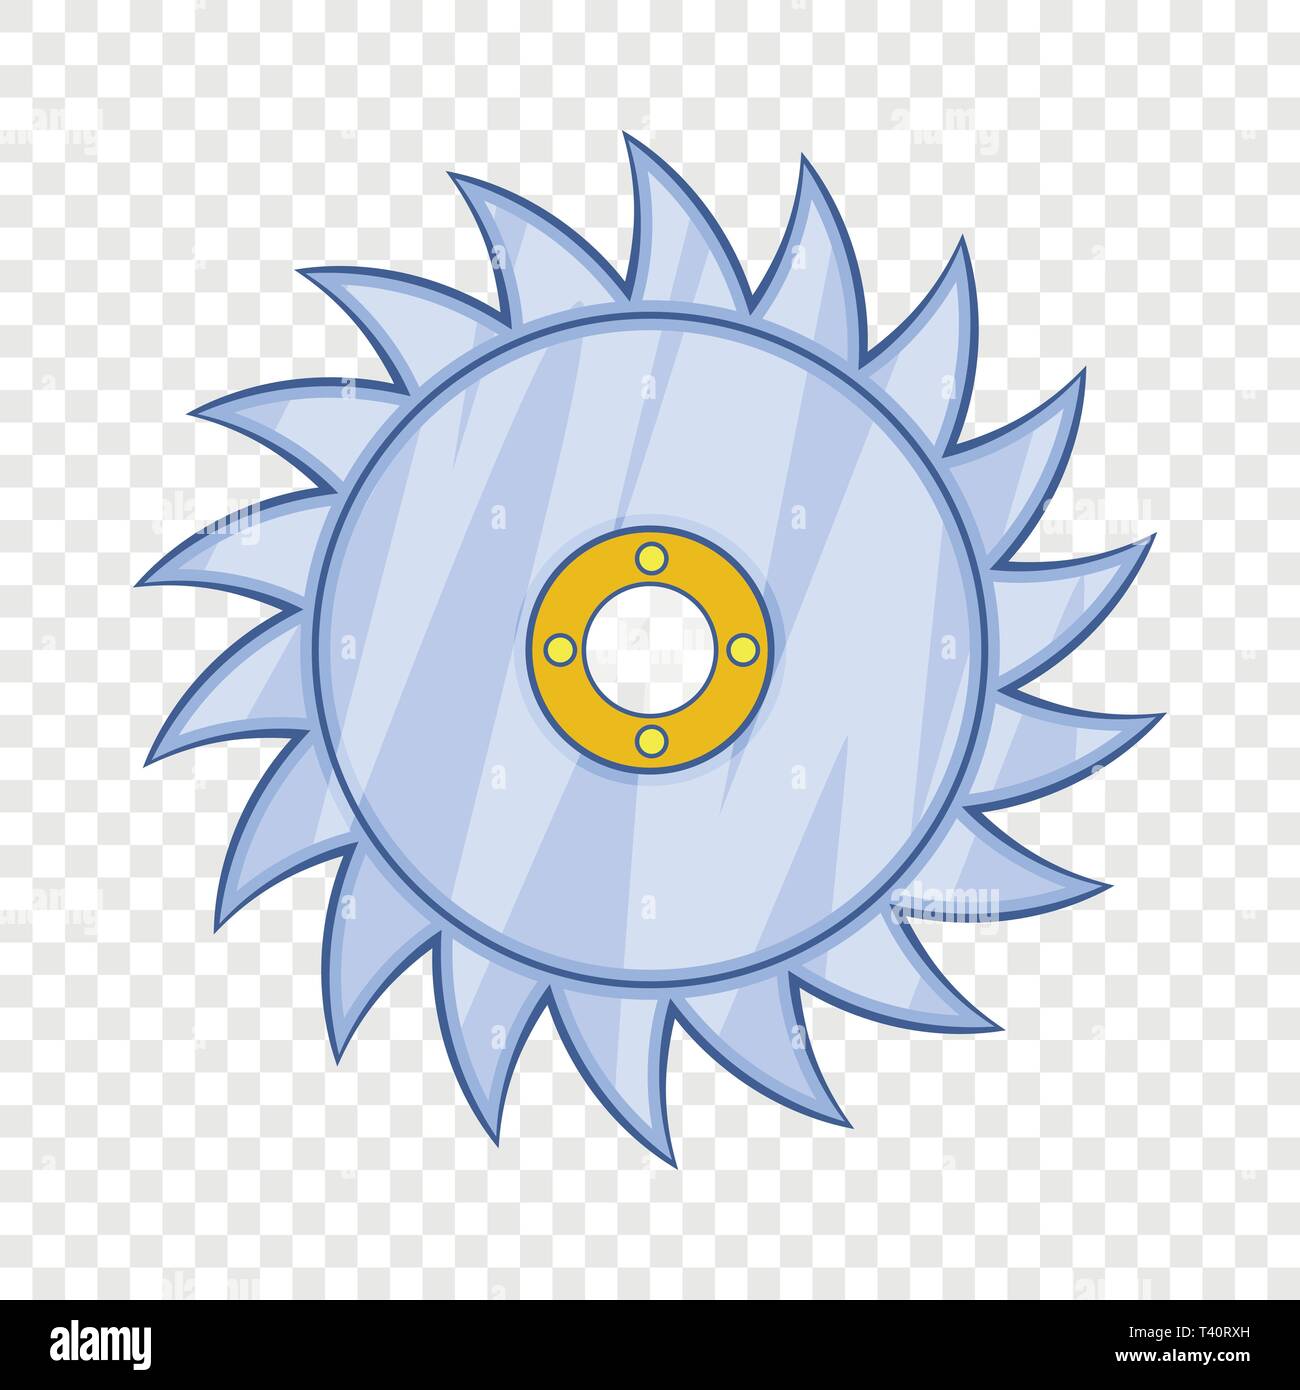 Circular saw blade icon, cartoon style Stock Vector